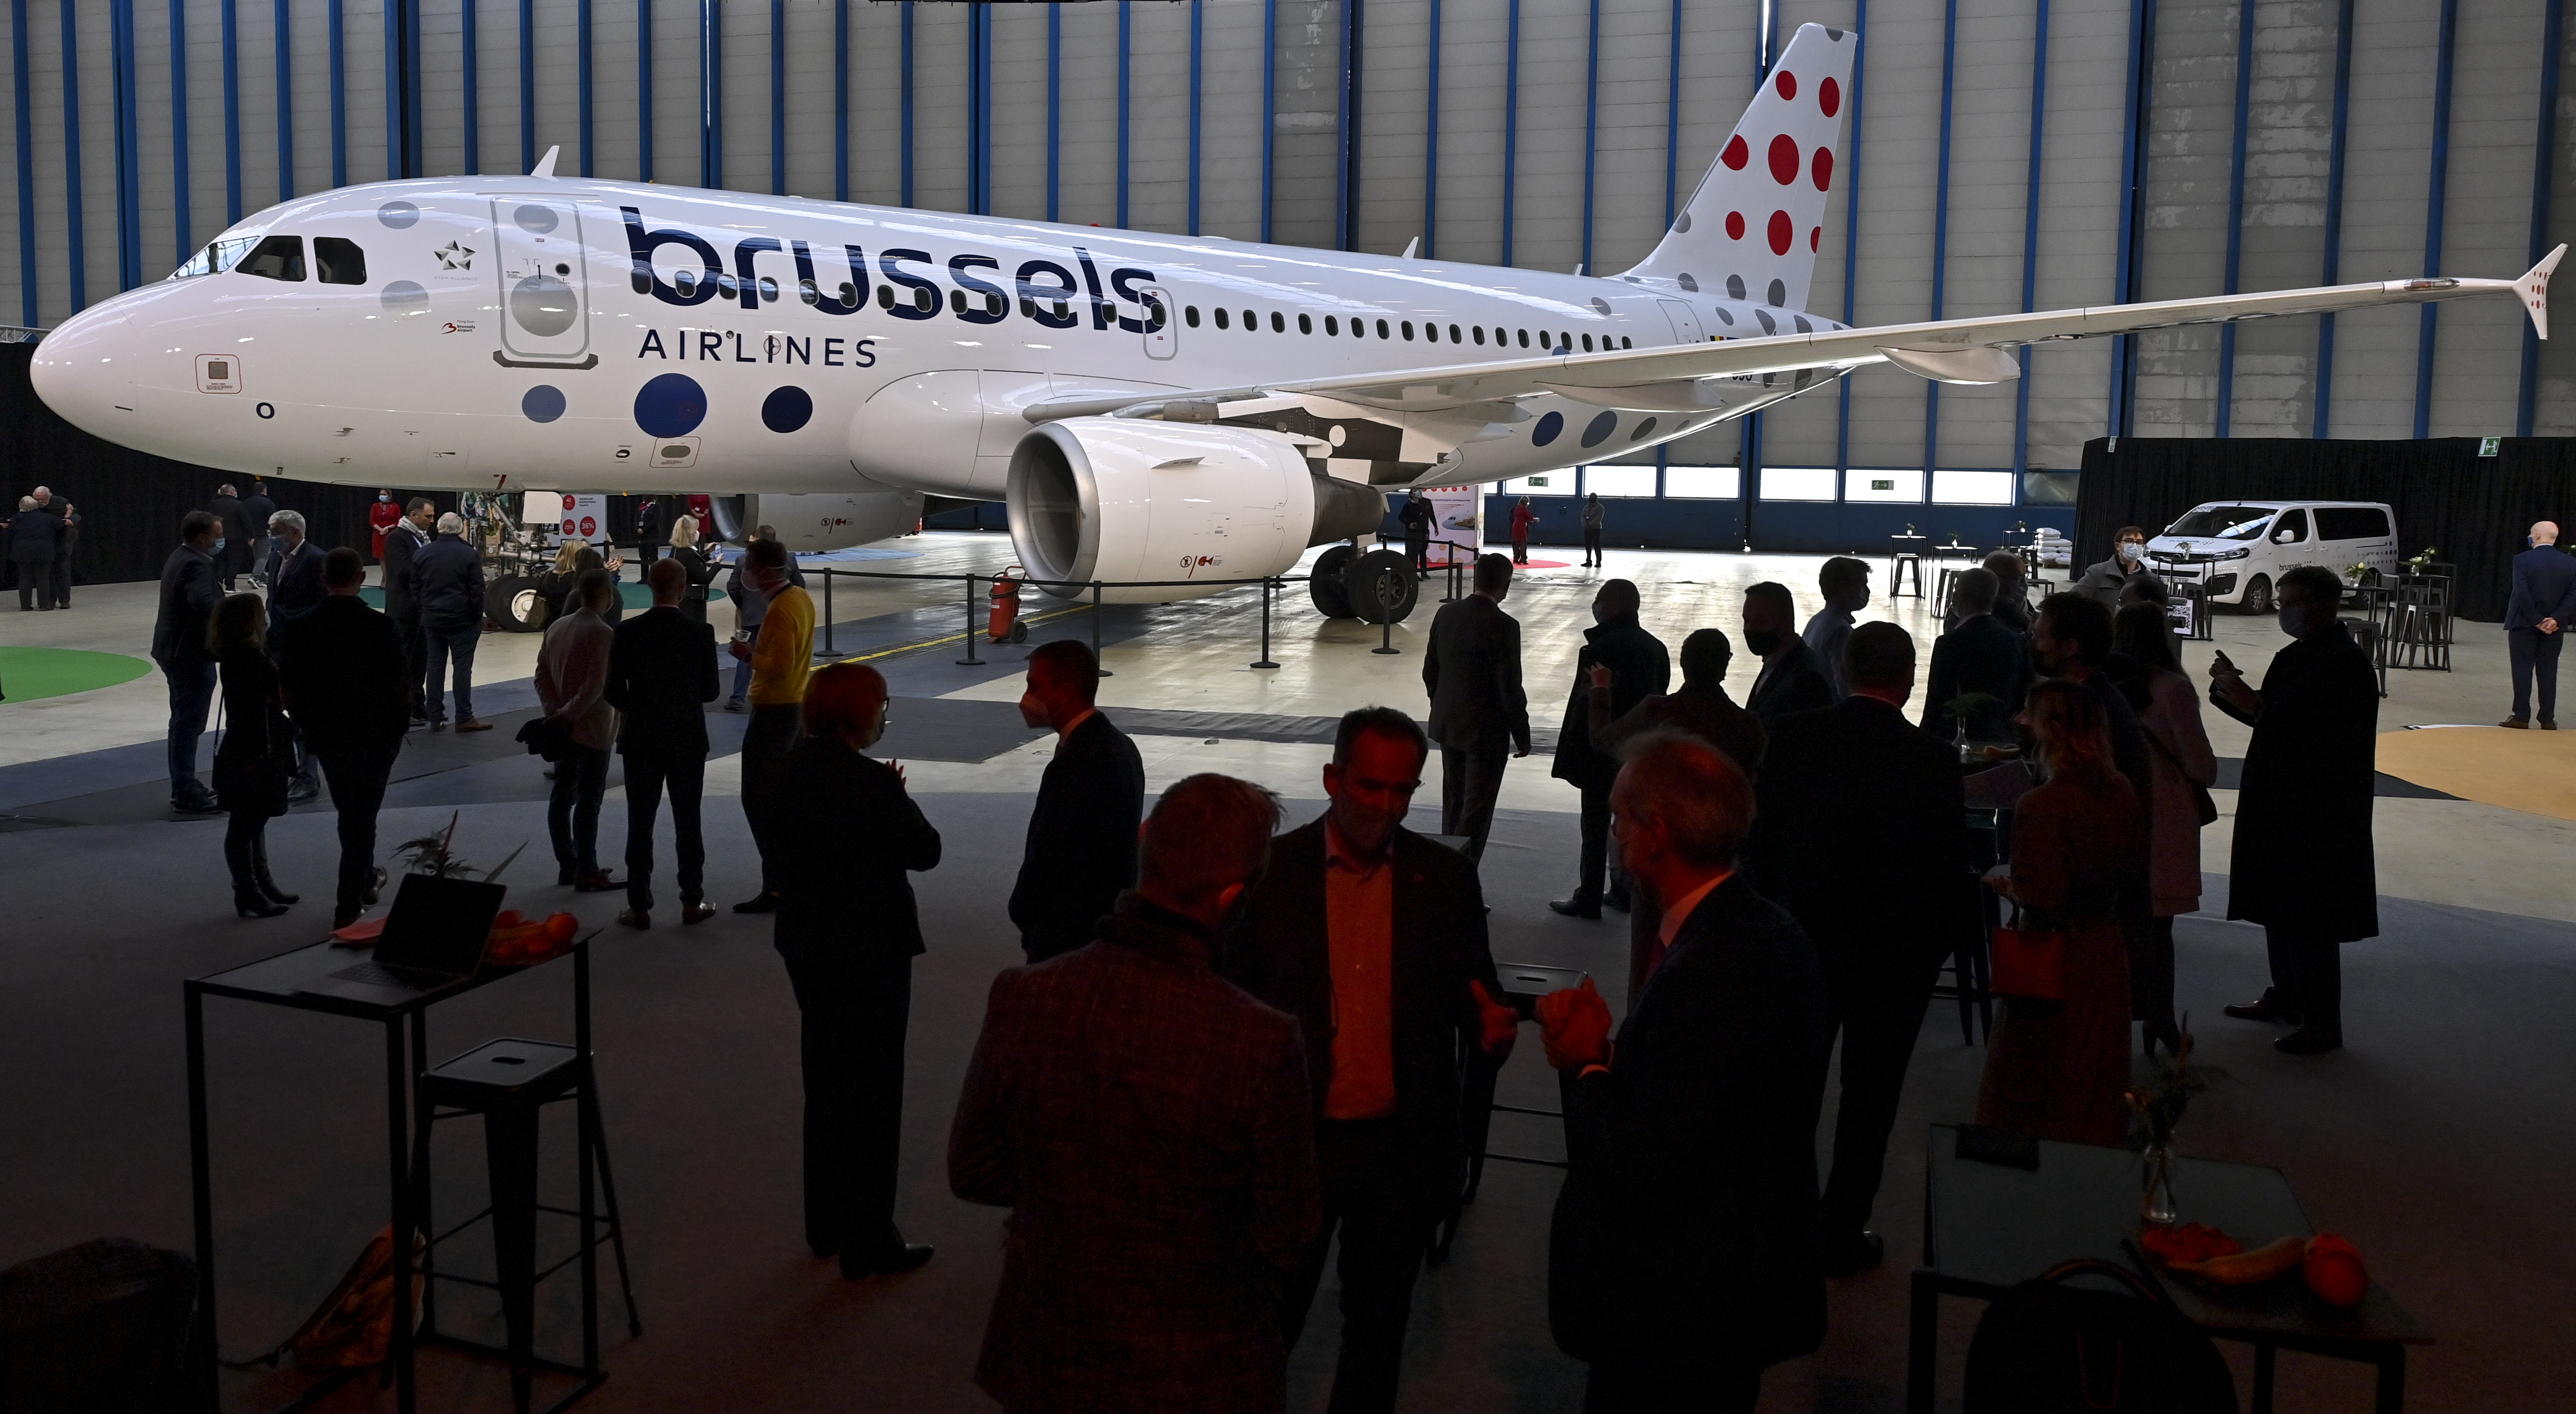 Le nouveau logo de Brussels Airlines provoque des turbulences